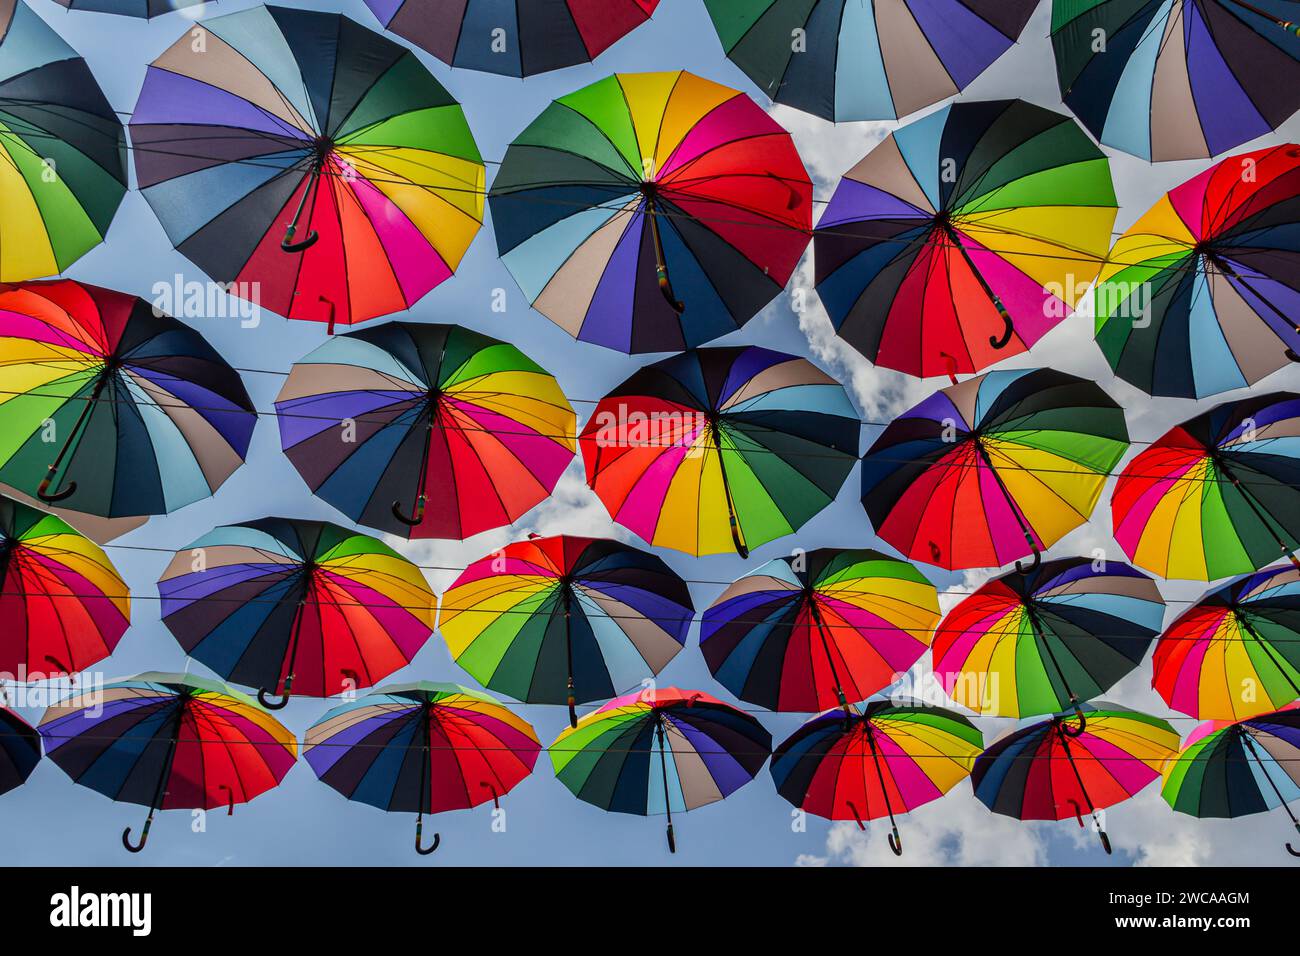 Das Bild fängt den Anblick zahlreicher farbenfroher Regenschirme ein, die in der Luft hängen. Die Regenschirme sind mehrfarbig, jeder mit einer einzigartigen Kombination von en Stockfoto